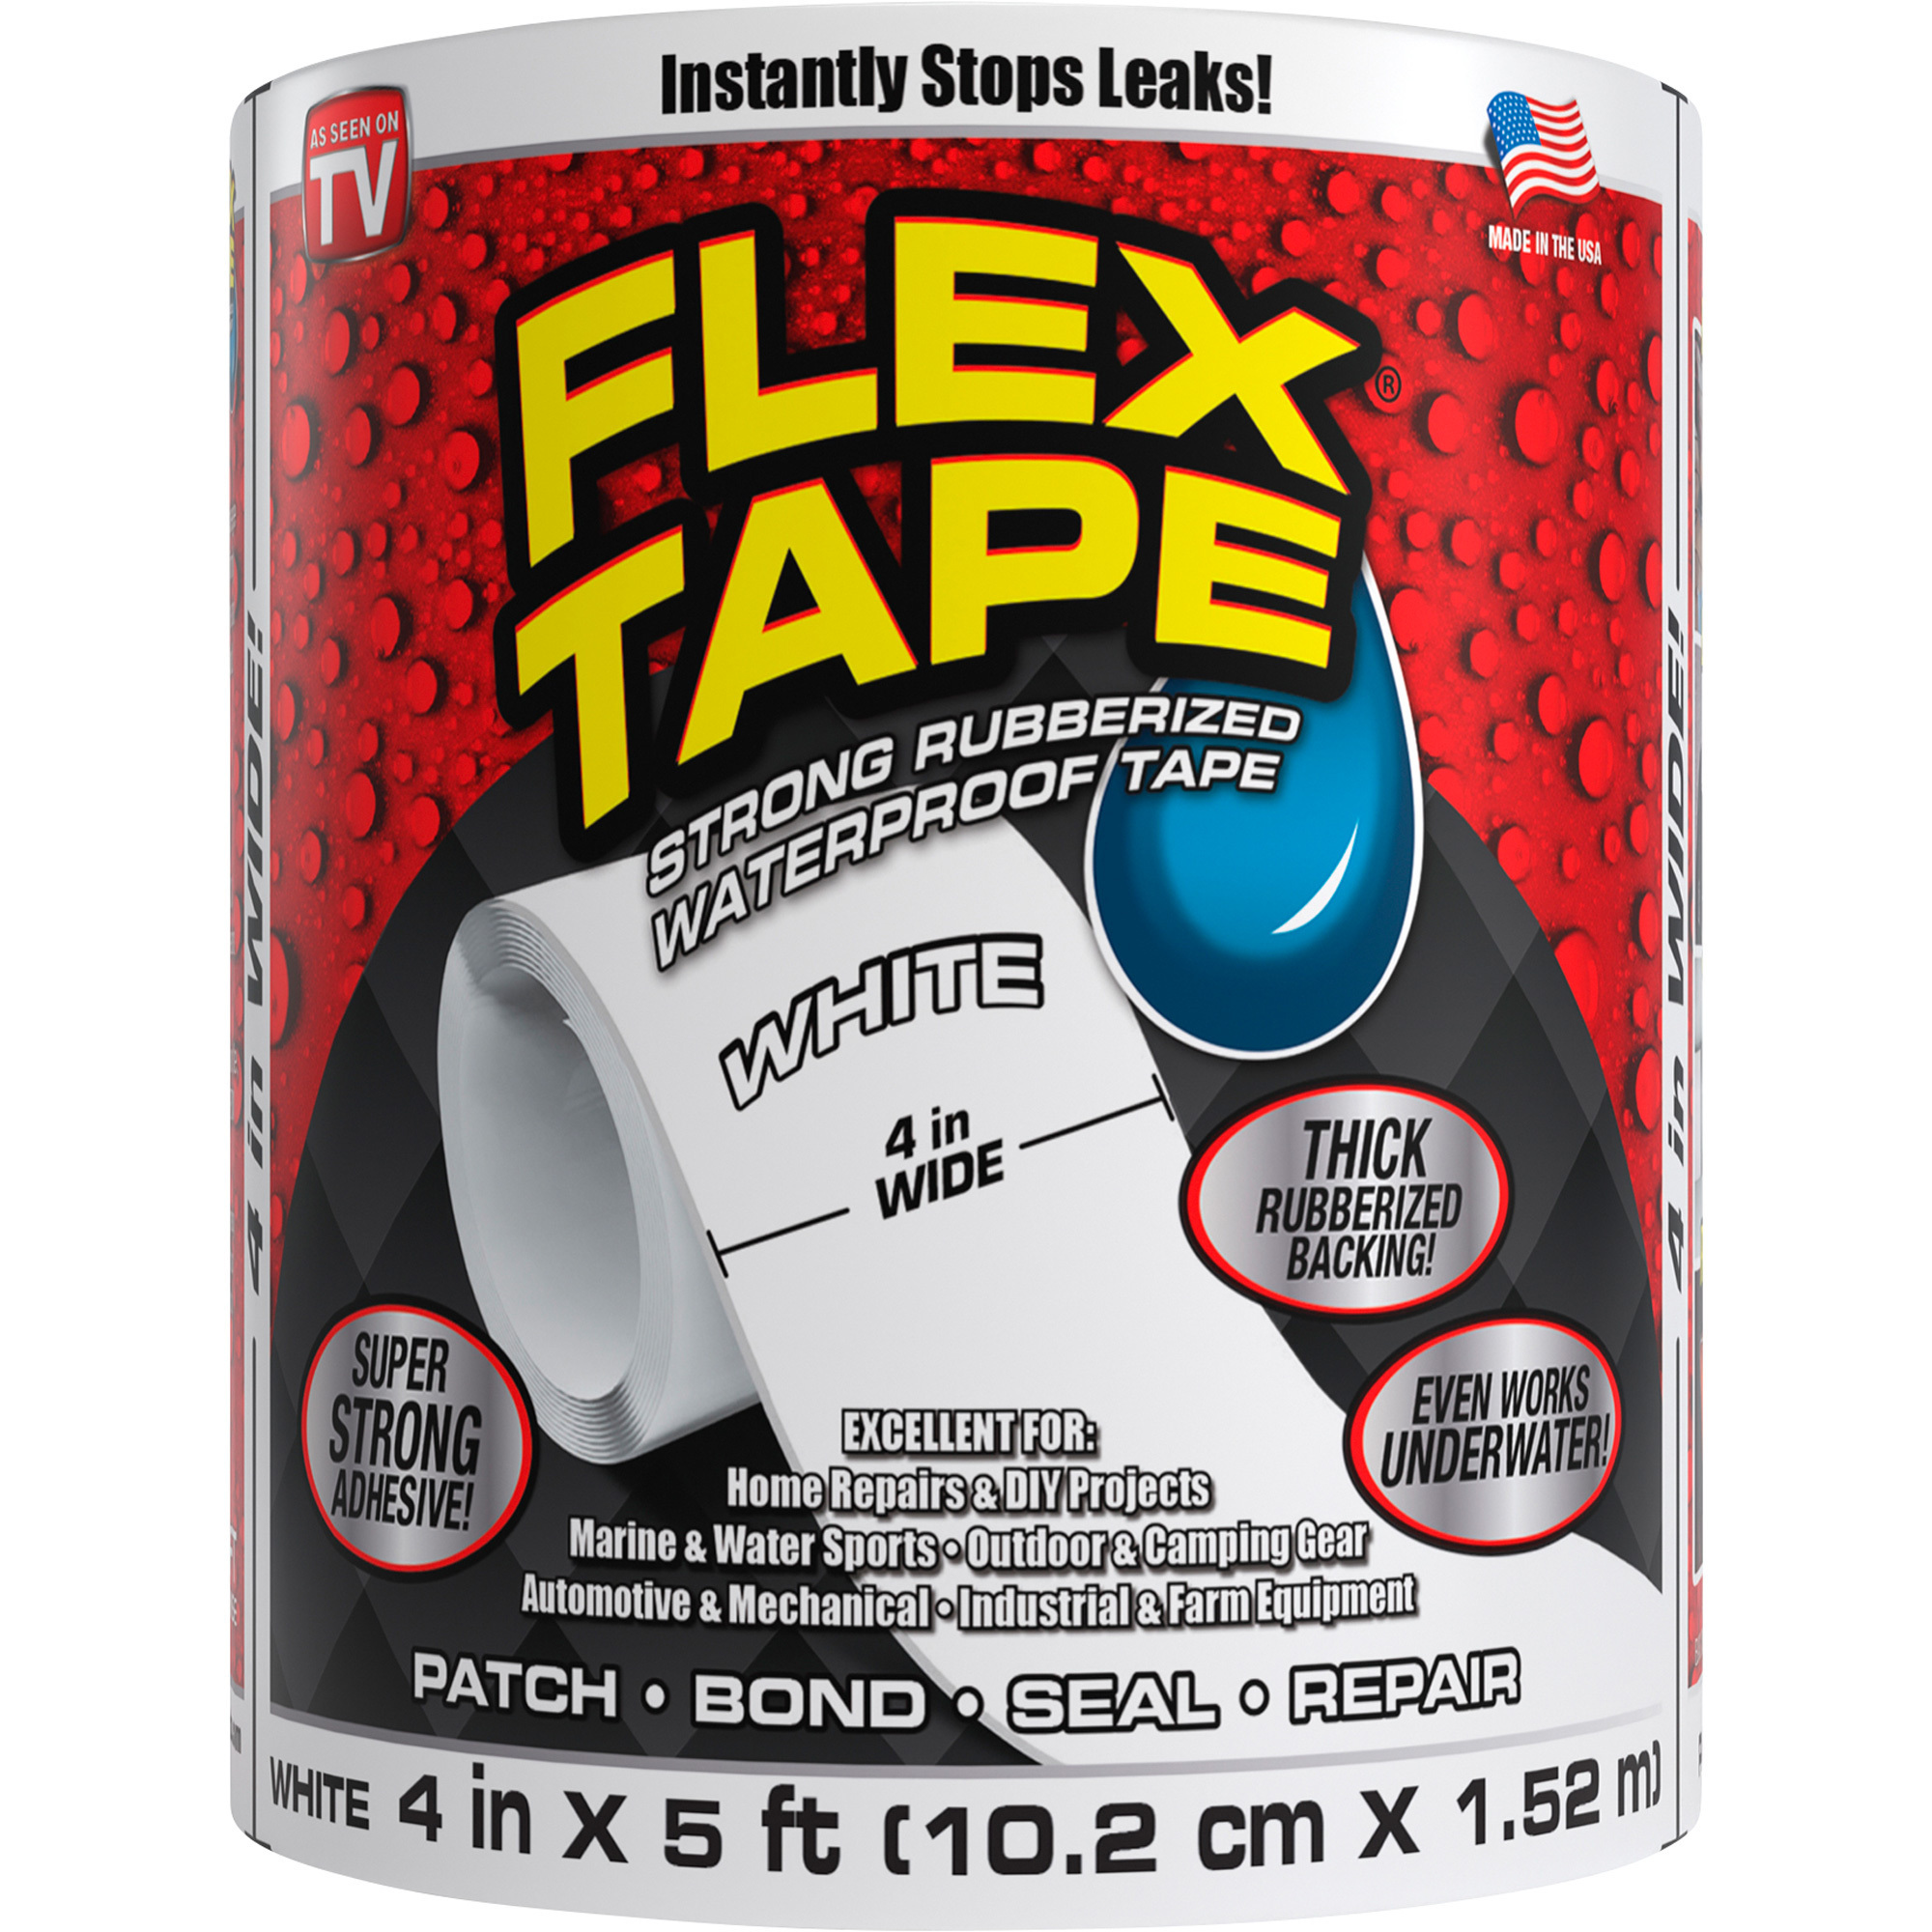 Flex Tape Rubberized Waterproof Tape â 4Inch W x 5ft.L Roll, White, Model TFSWHTR0405